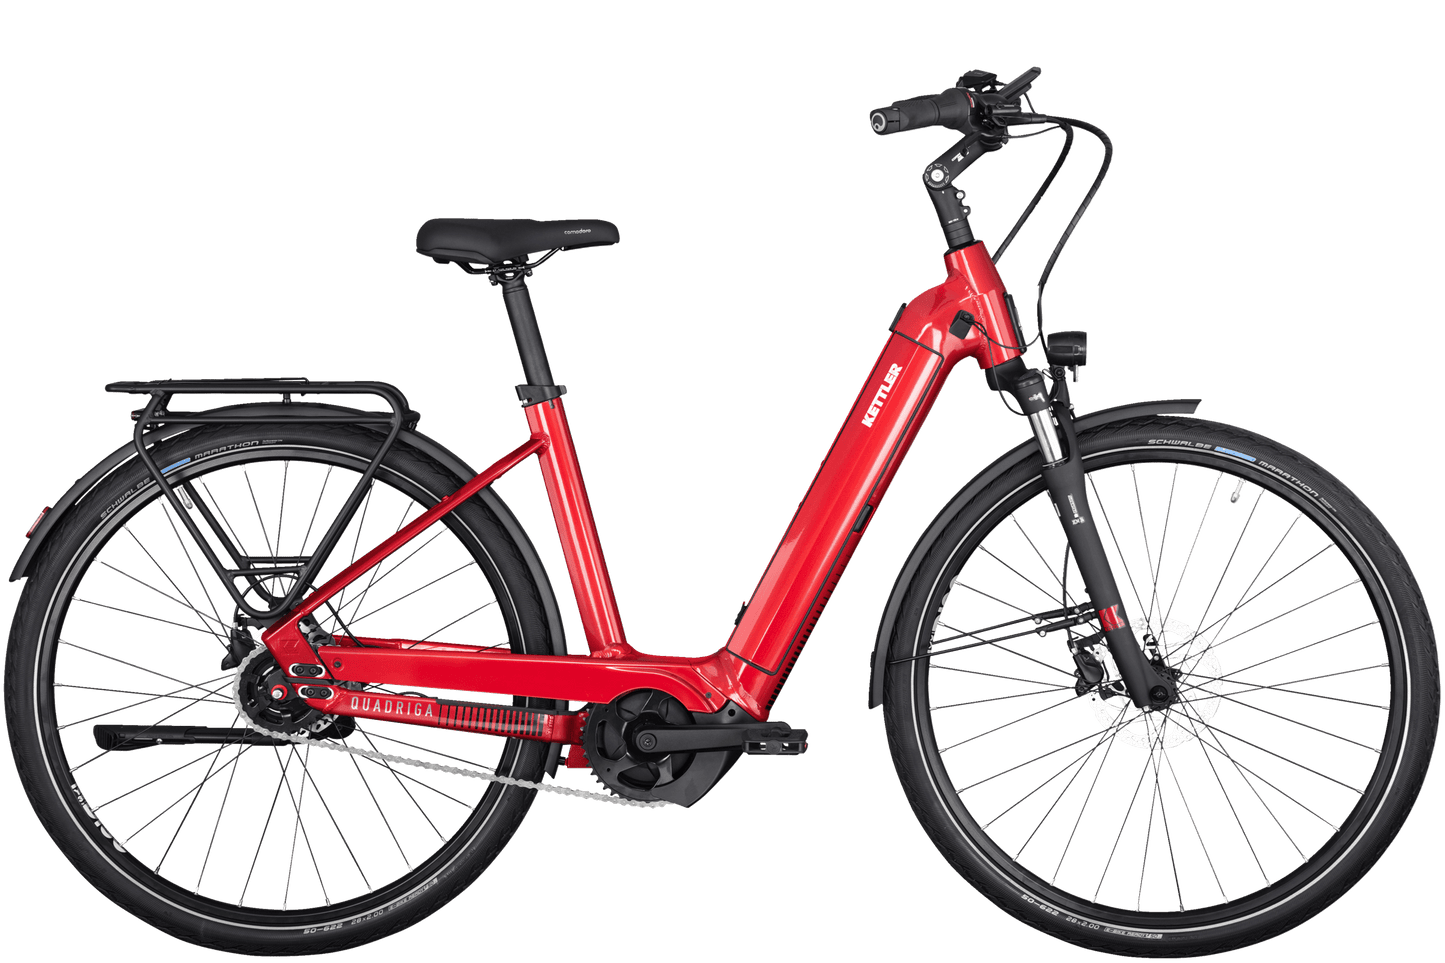 Ein hell rotes Kettler Quadriga P5 FL Fahrrad, Dank K-Link-Kupplung für Anhänger vorbereitet, schwarzer Sattel